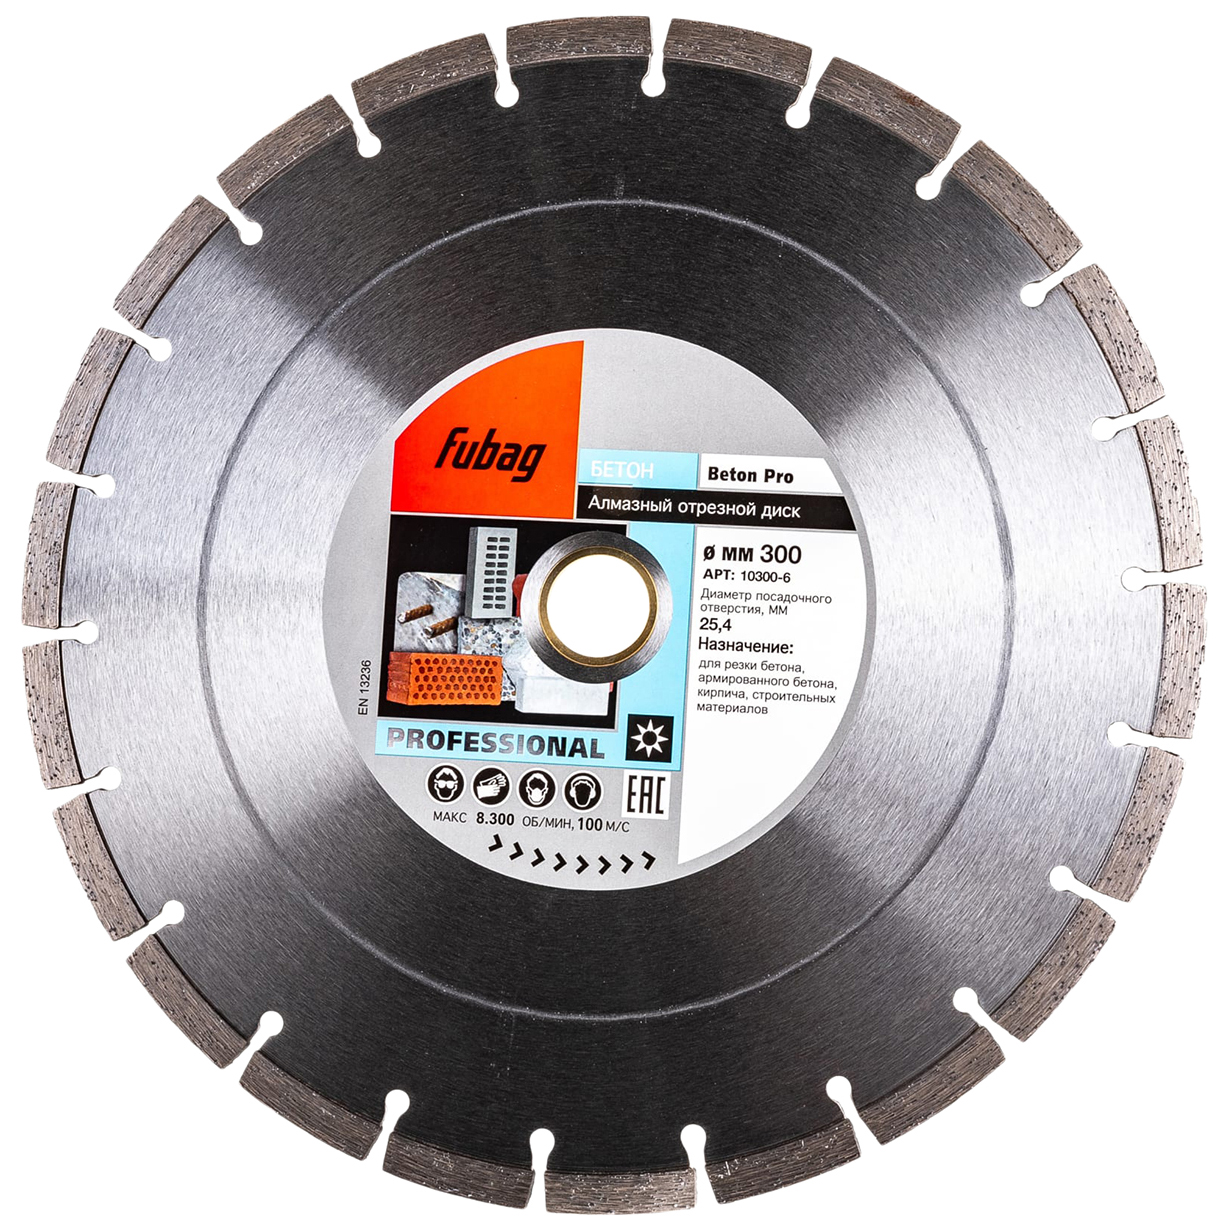 фото Fubag алмазный диск beton pro_ диам 300/25.4 10300-6